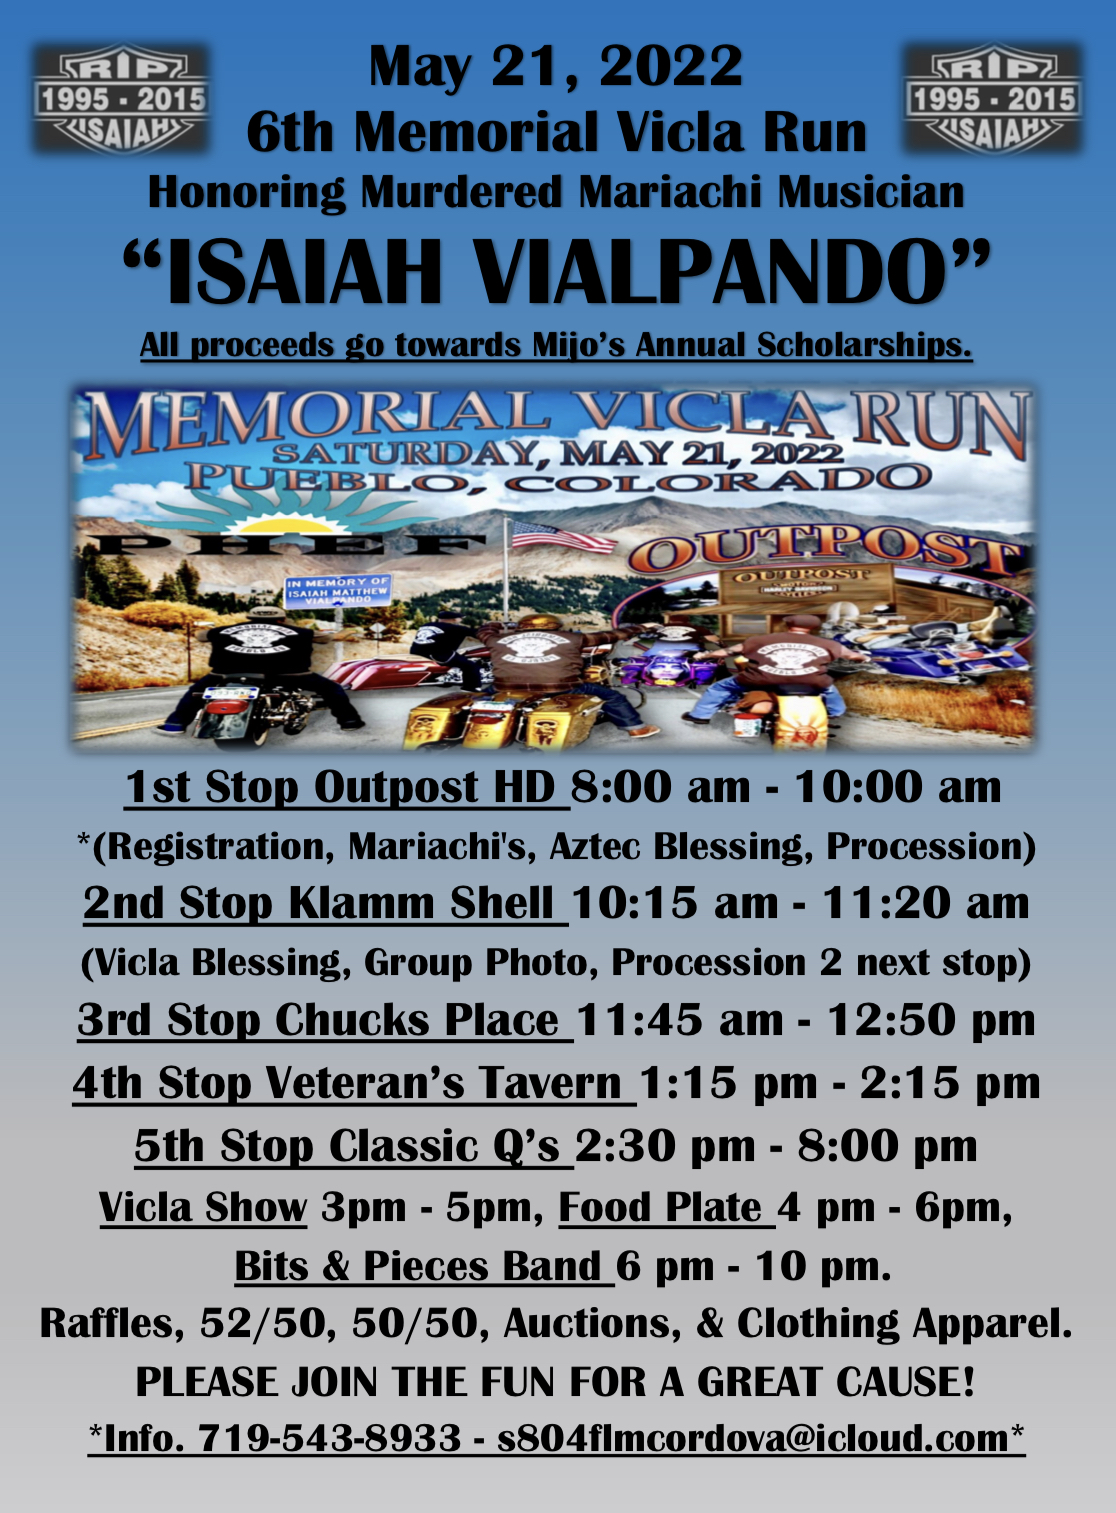 Isaiah Vialpando Memorial Vicla Run in Pueblo, Colorado